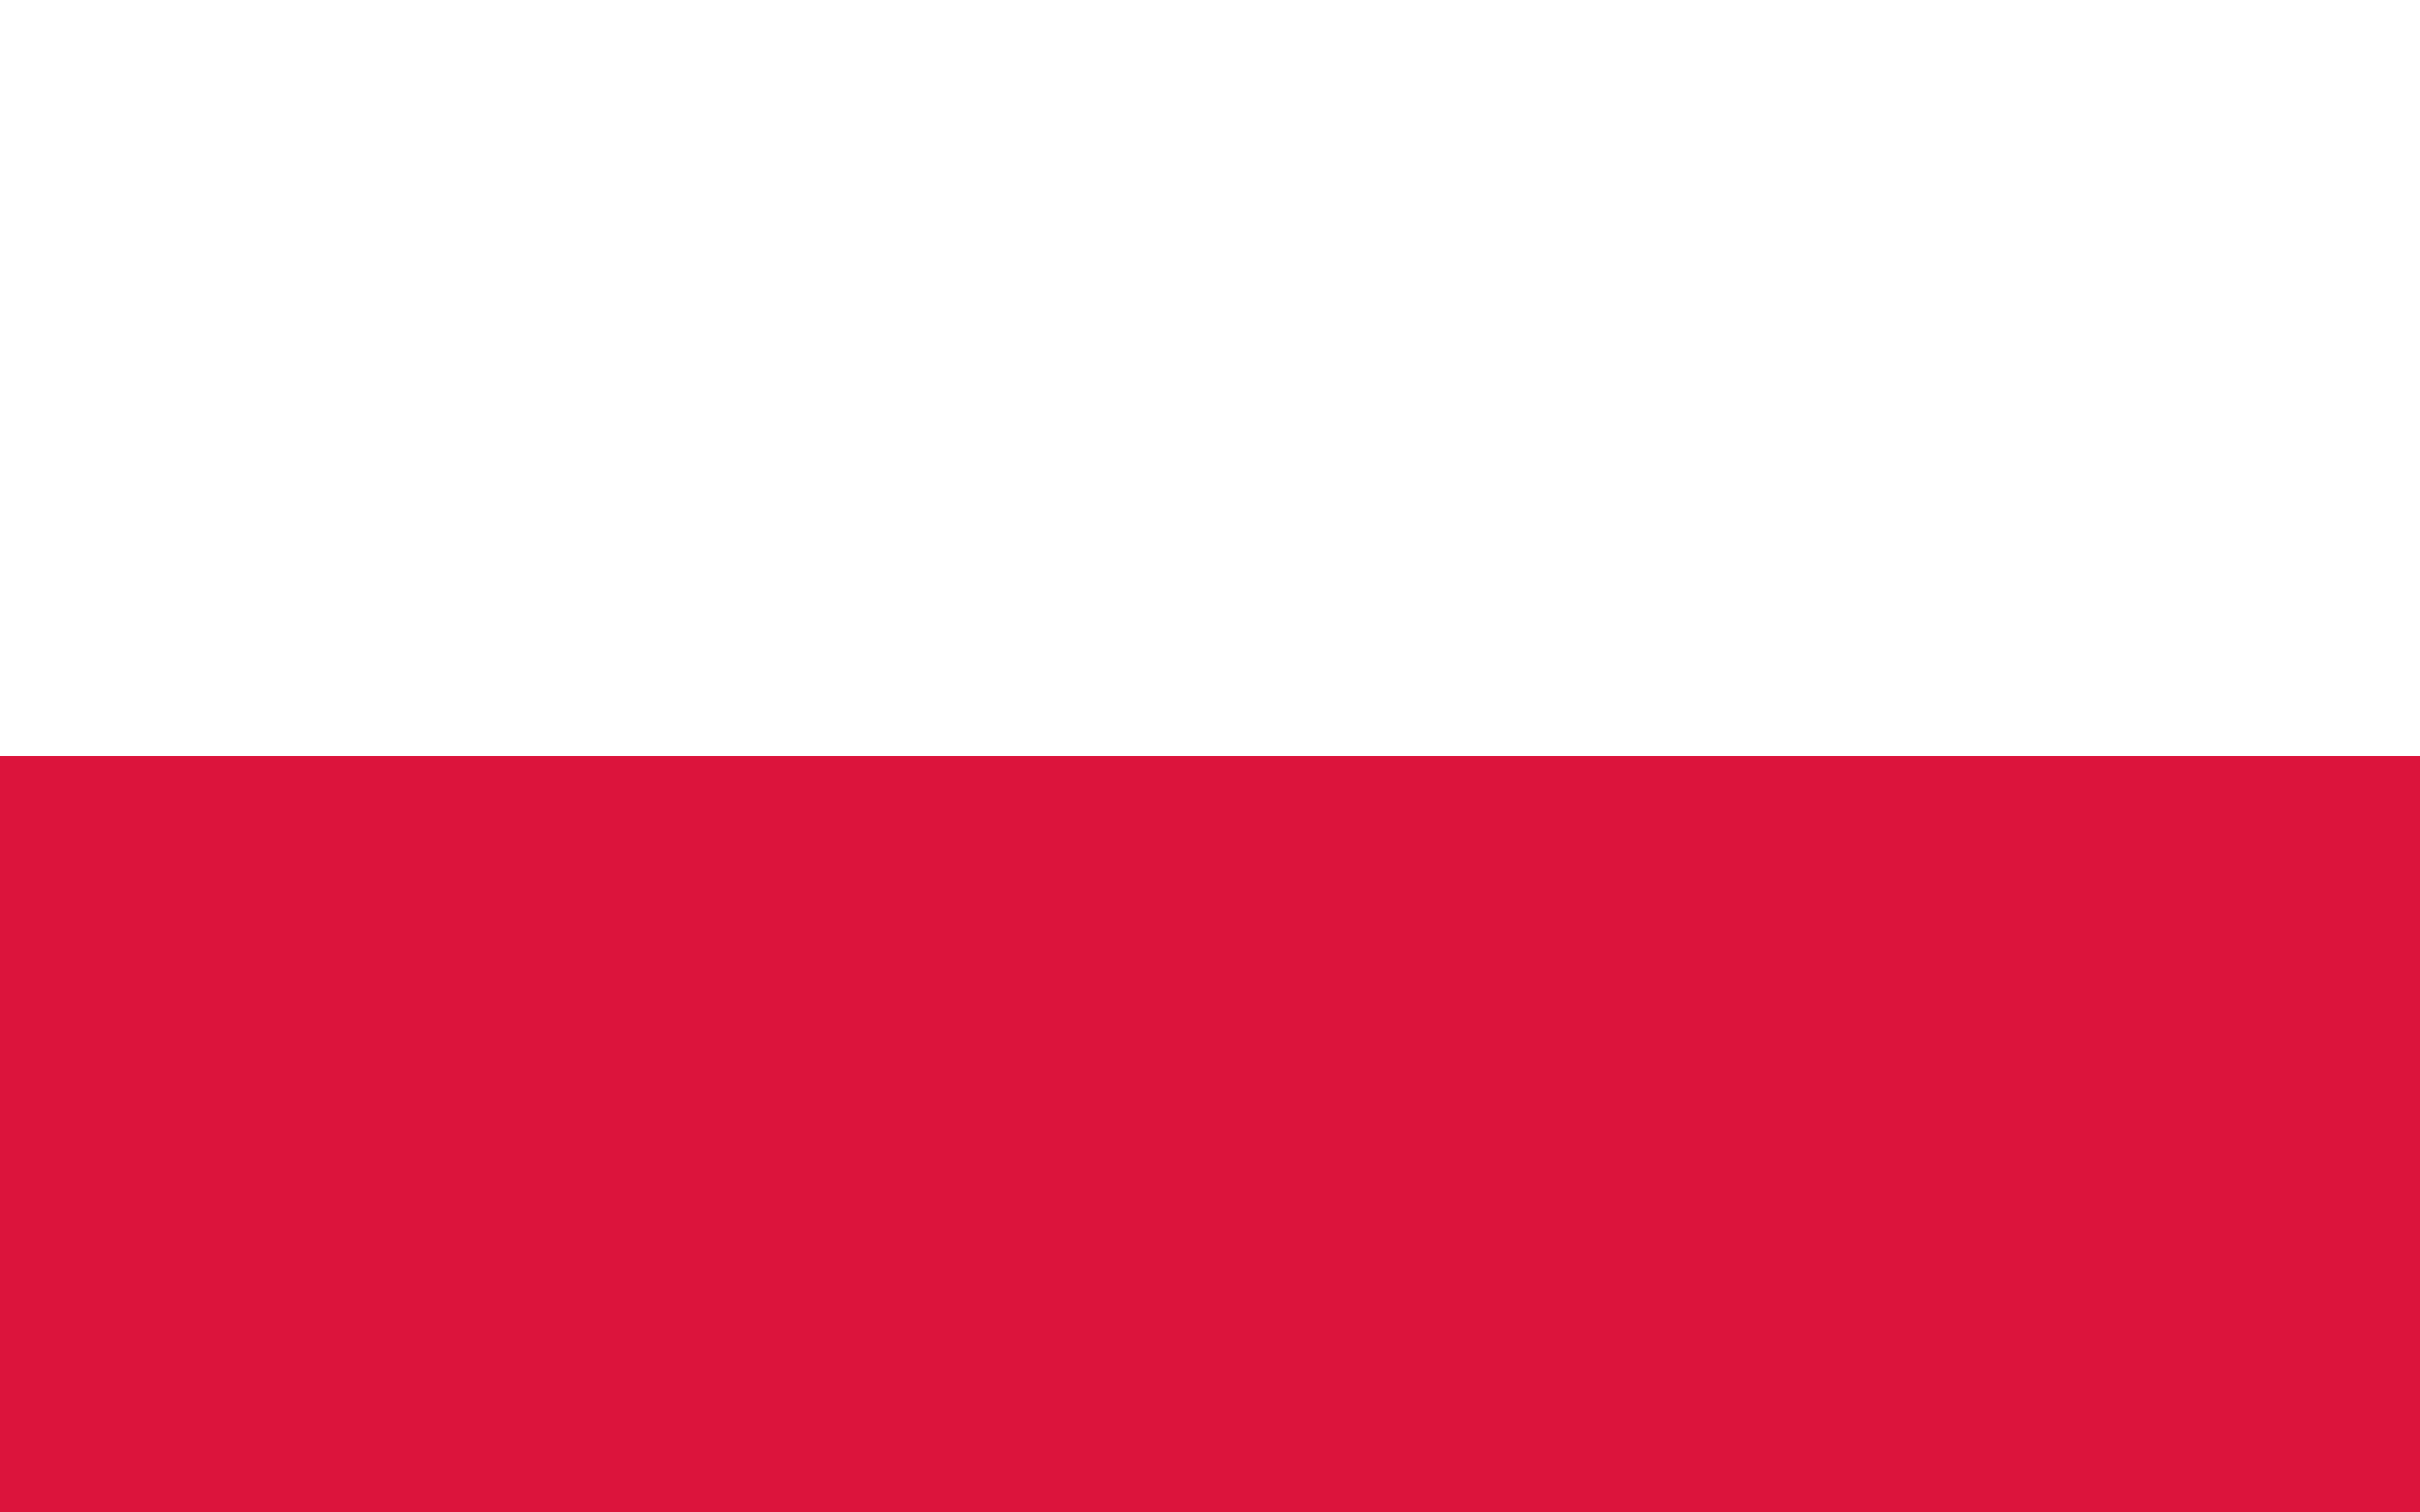 la imagen muestra la bandera de polonia